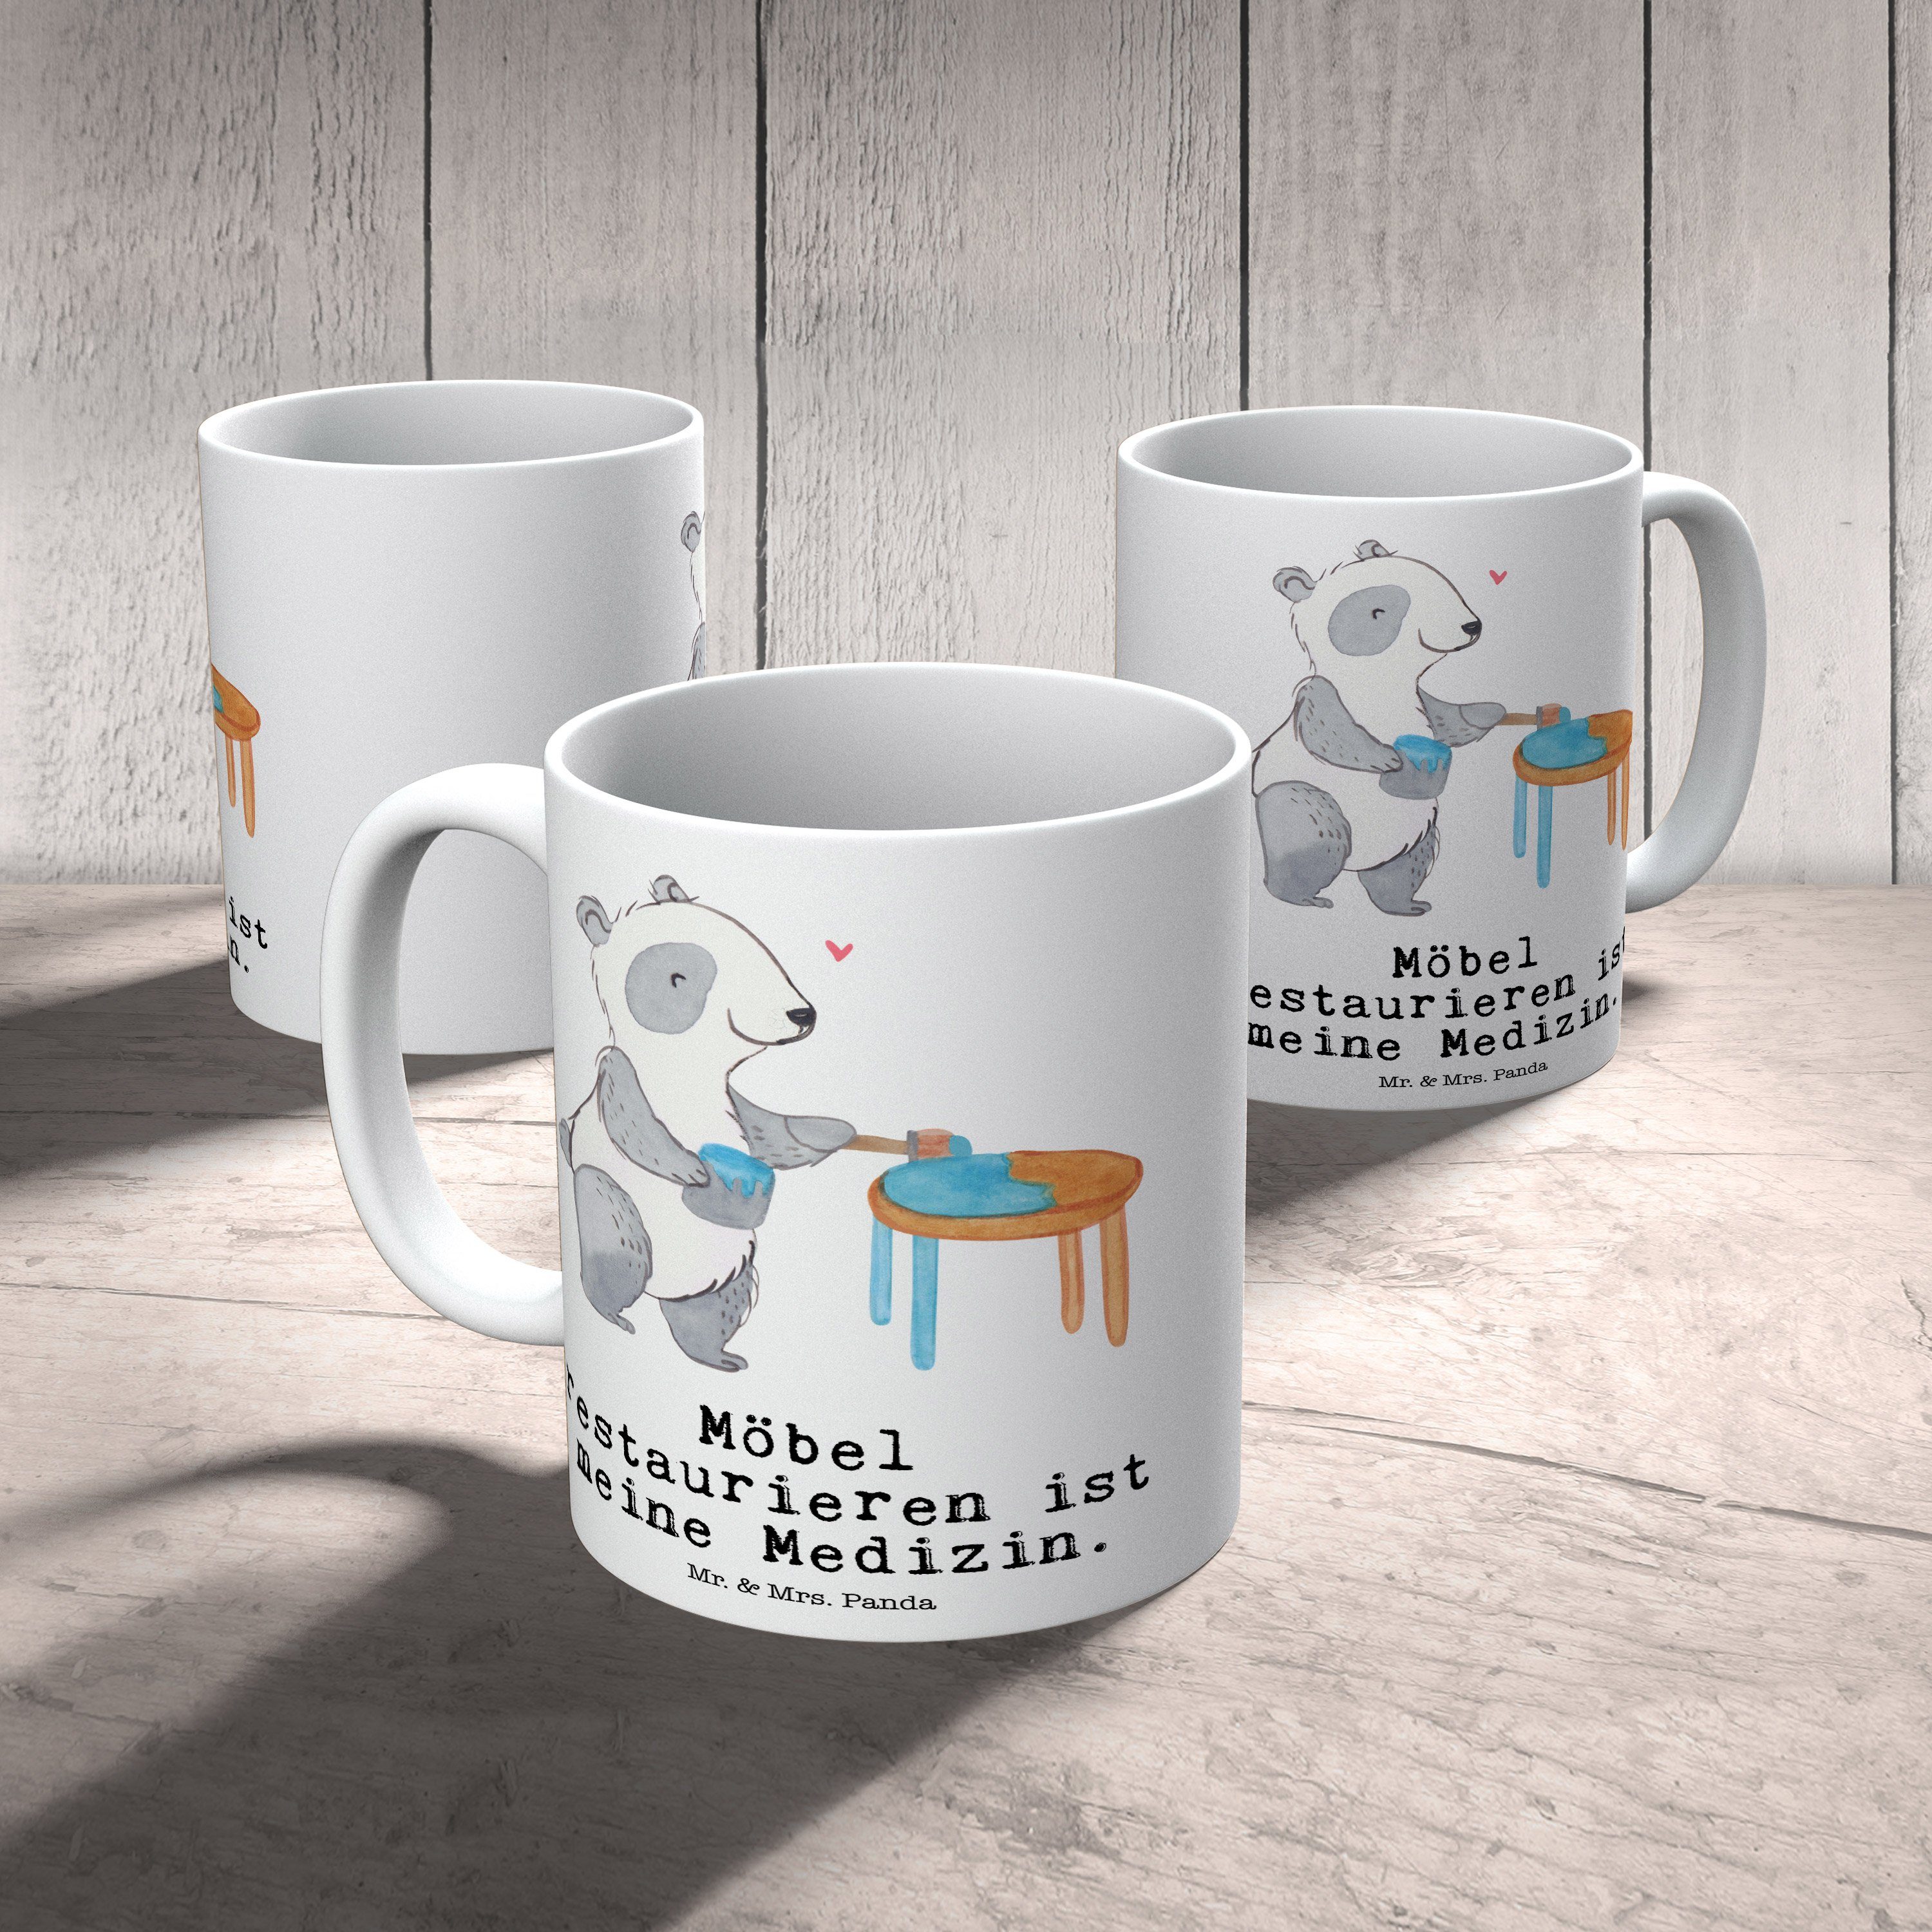 Keramik Tasse Geschenk, - Mrs. Sportler, Möbel Panda & restaurieren Medizin - Panda Weiß Mr. Restaur,